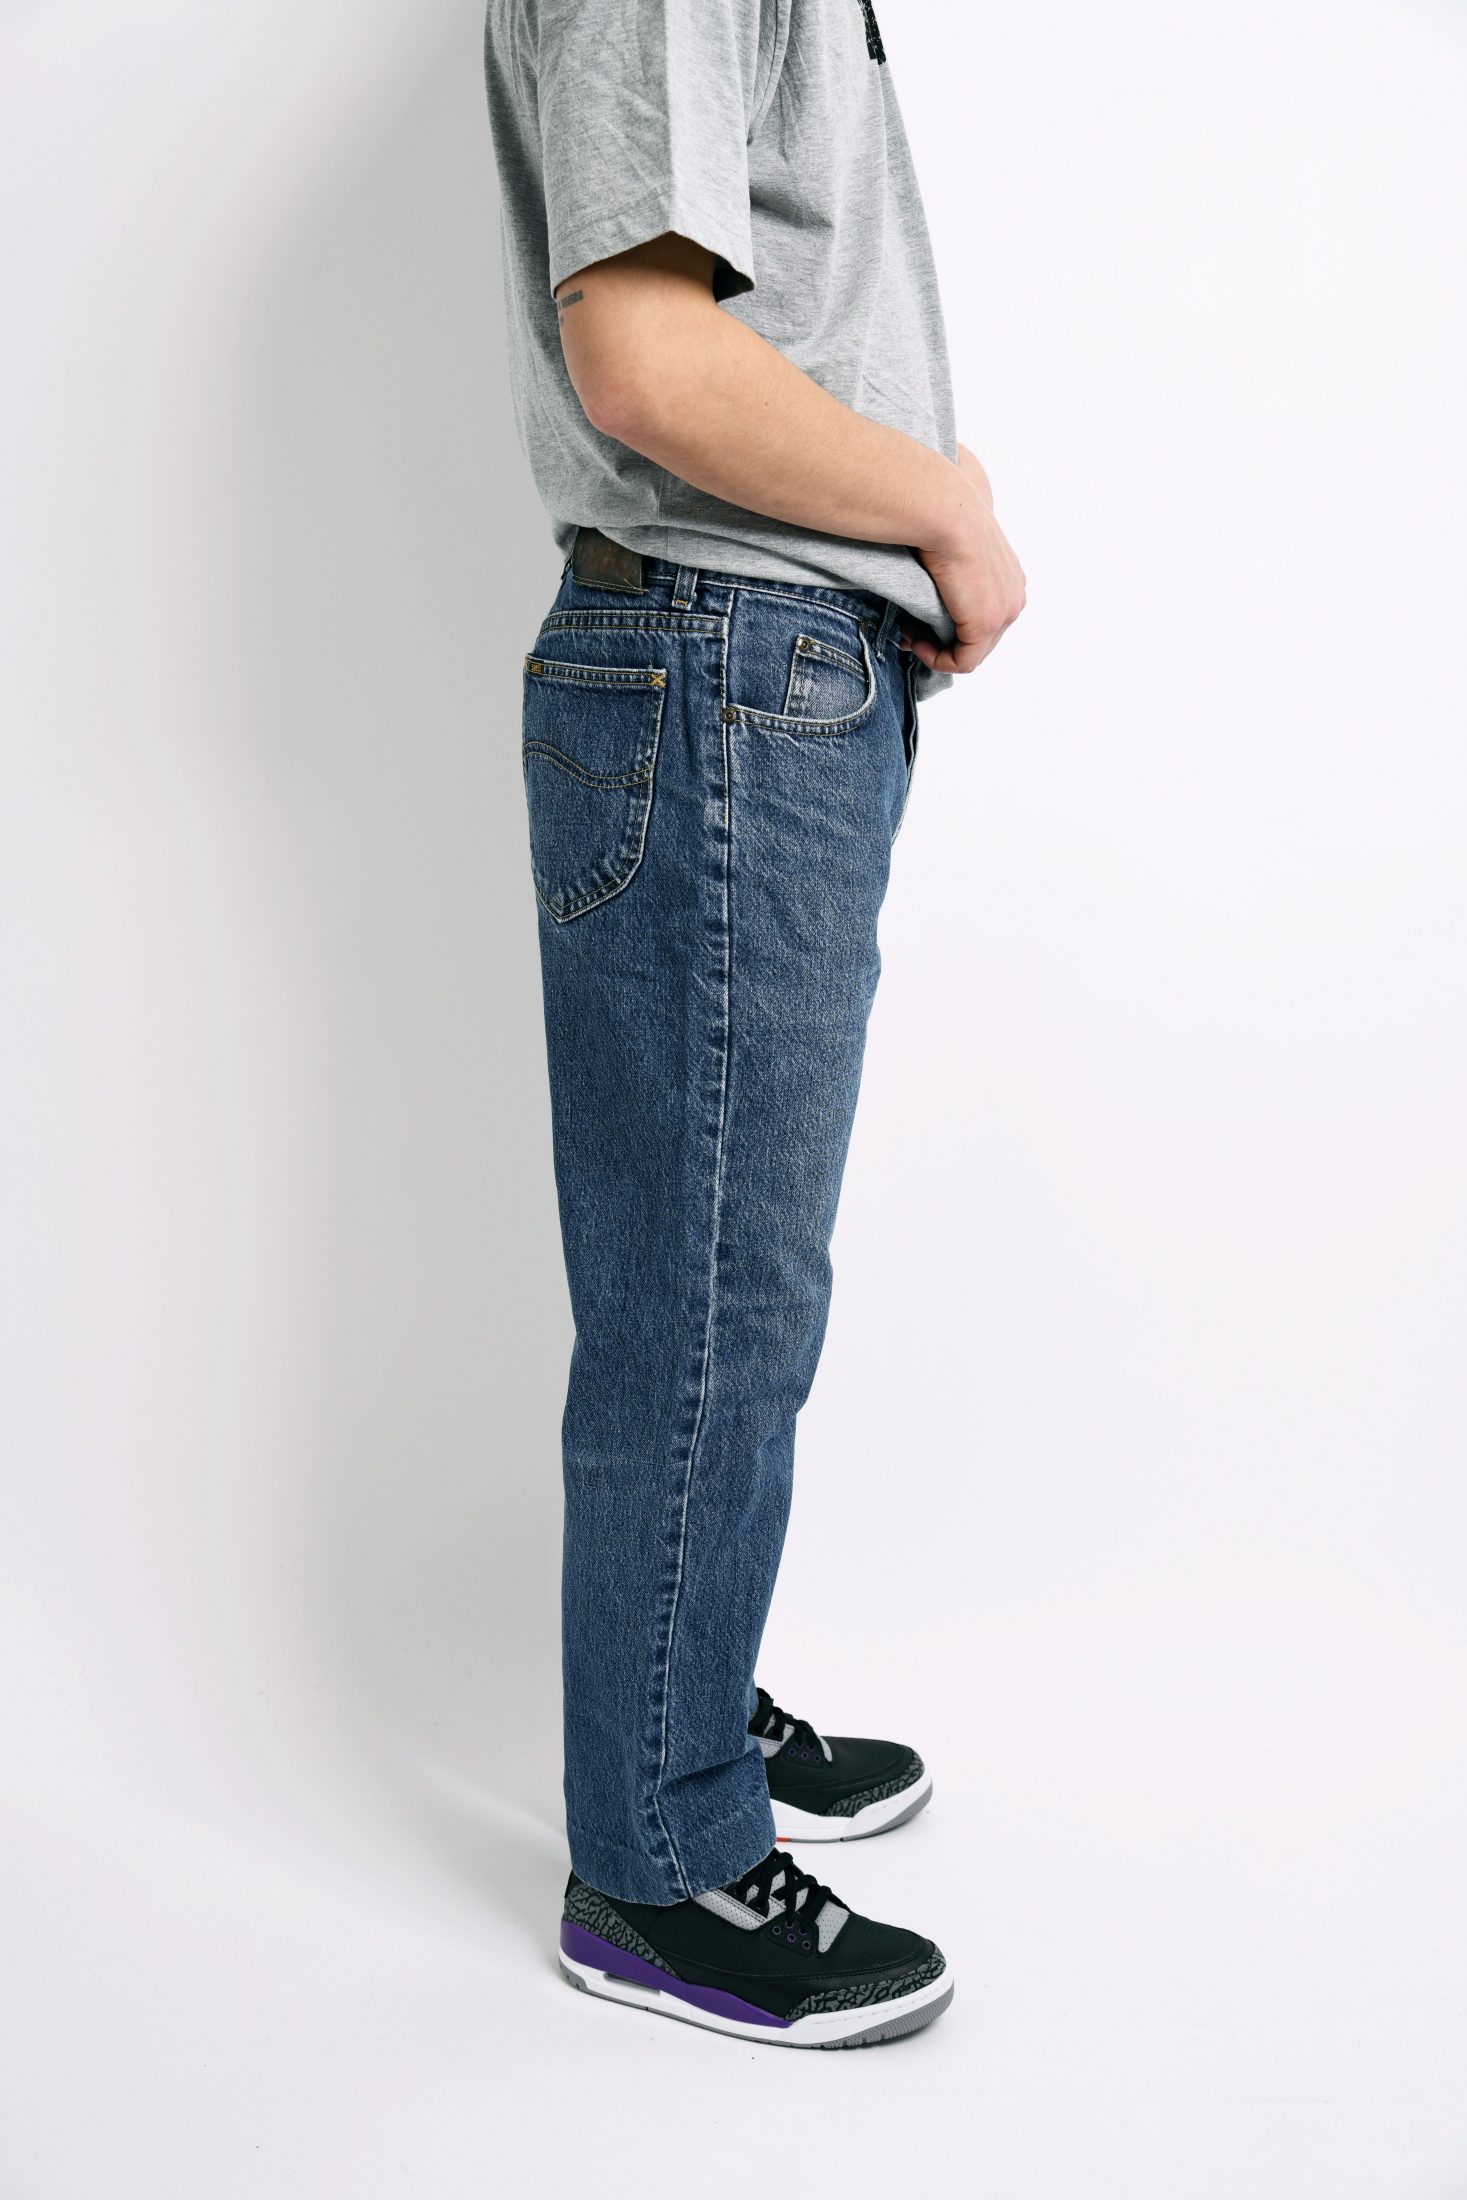 Vintage LEE mens jeans | HOT MILK vintage clothing online